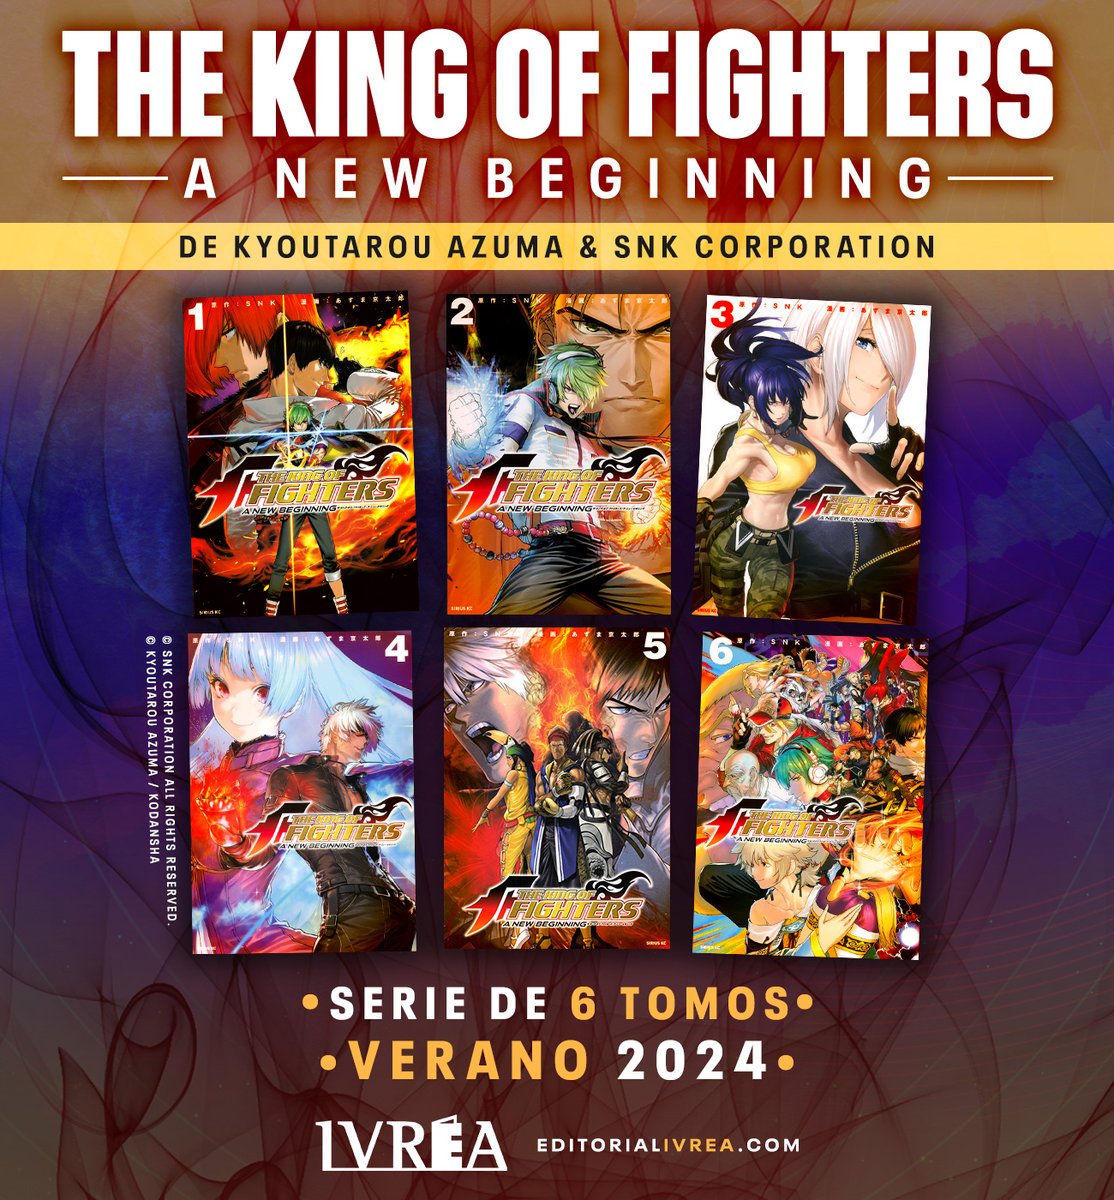 [ Noticia ] The King of Fighters ✨

La editorial @Ivrea anunció que publicará el #Manga de 'The King of Fighters: A New Beginning' de #KyoutarouAzuma y #SNKCorporation. Tendrá formato B6, periodicidad bimestral y se publicará en julio de 2024.